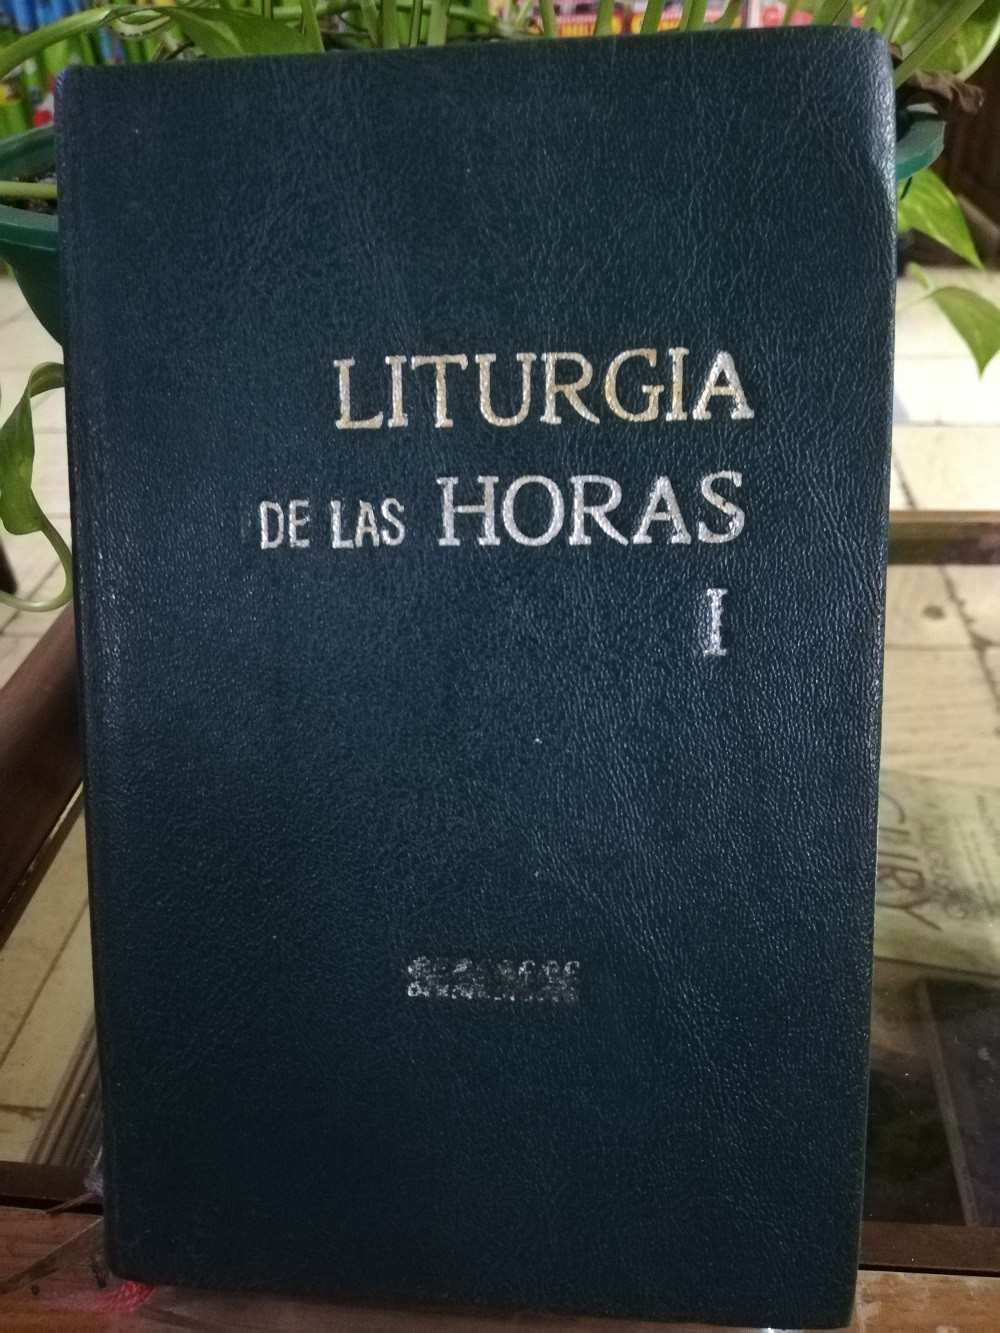 Imagen LA LITURGIA DE LAS HORAS EN 2 TOMOS